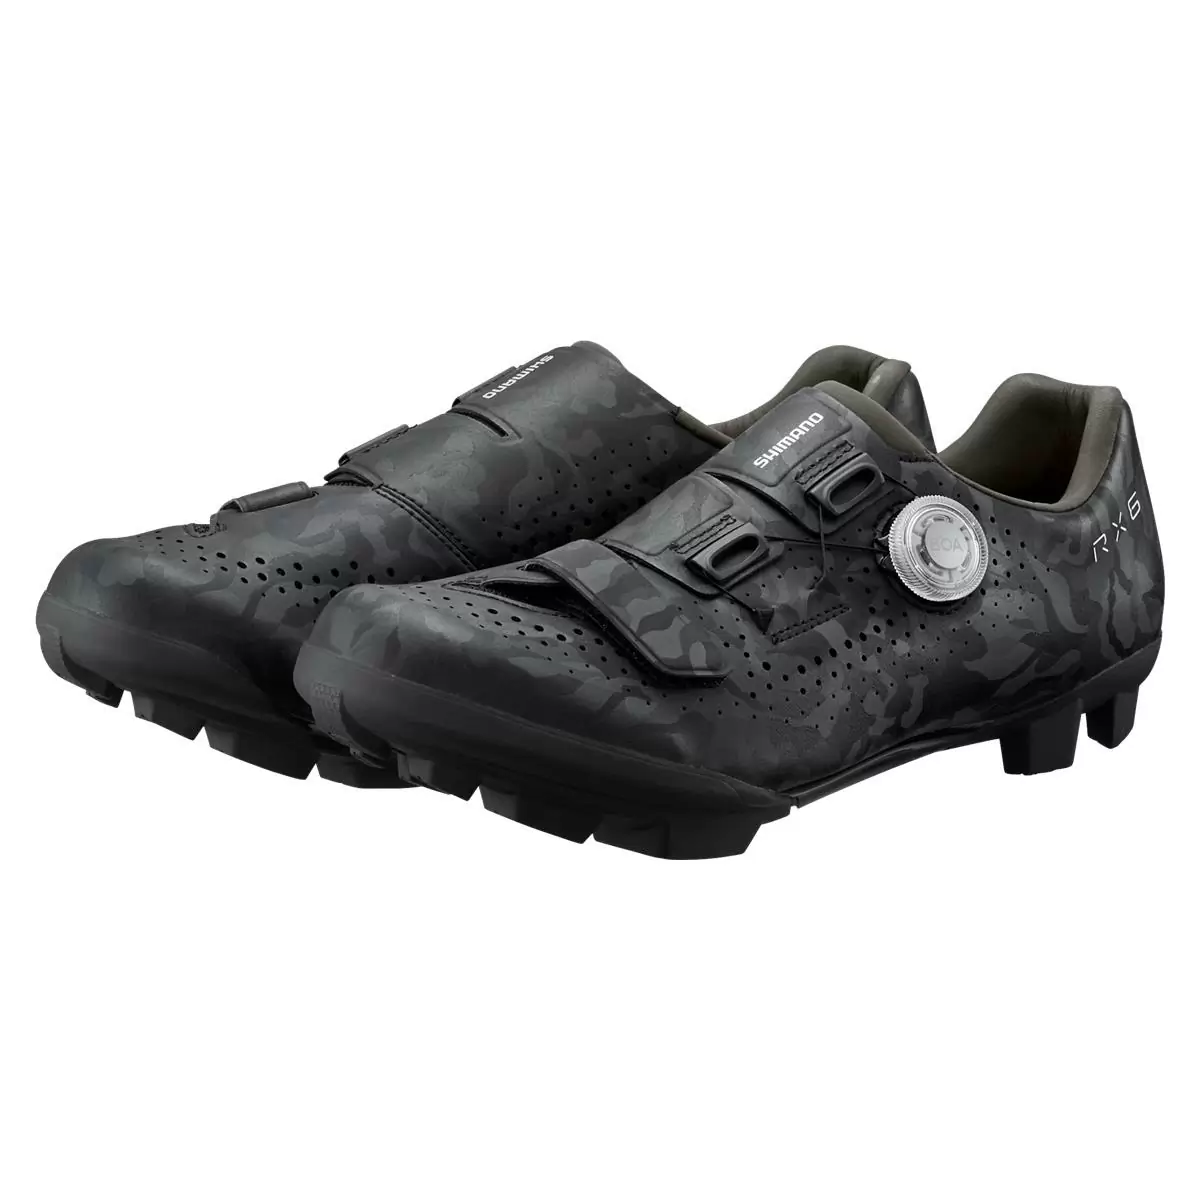 MTB / Gravel Shoes SH-RX600 RX6 Black Size 44 #3